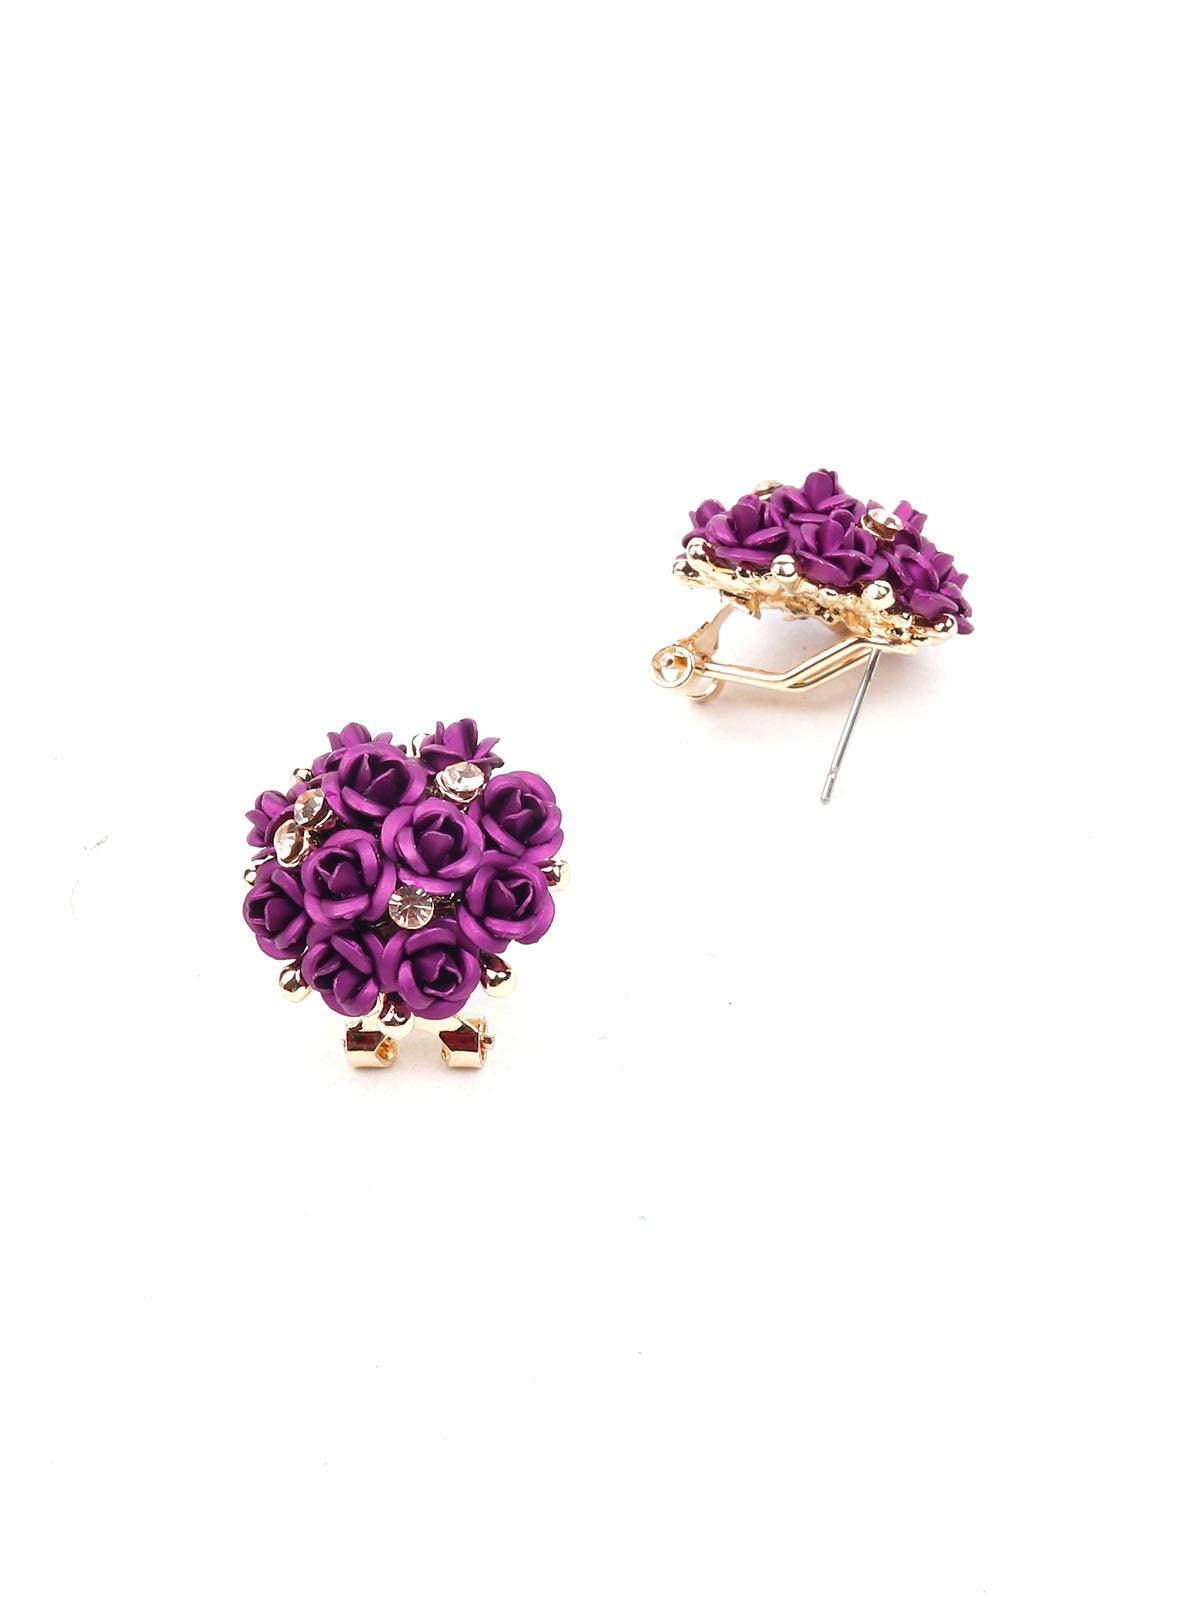 Women's Deep Purple Floral Pendant Necklace Set - Odette